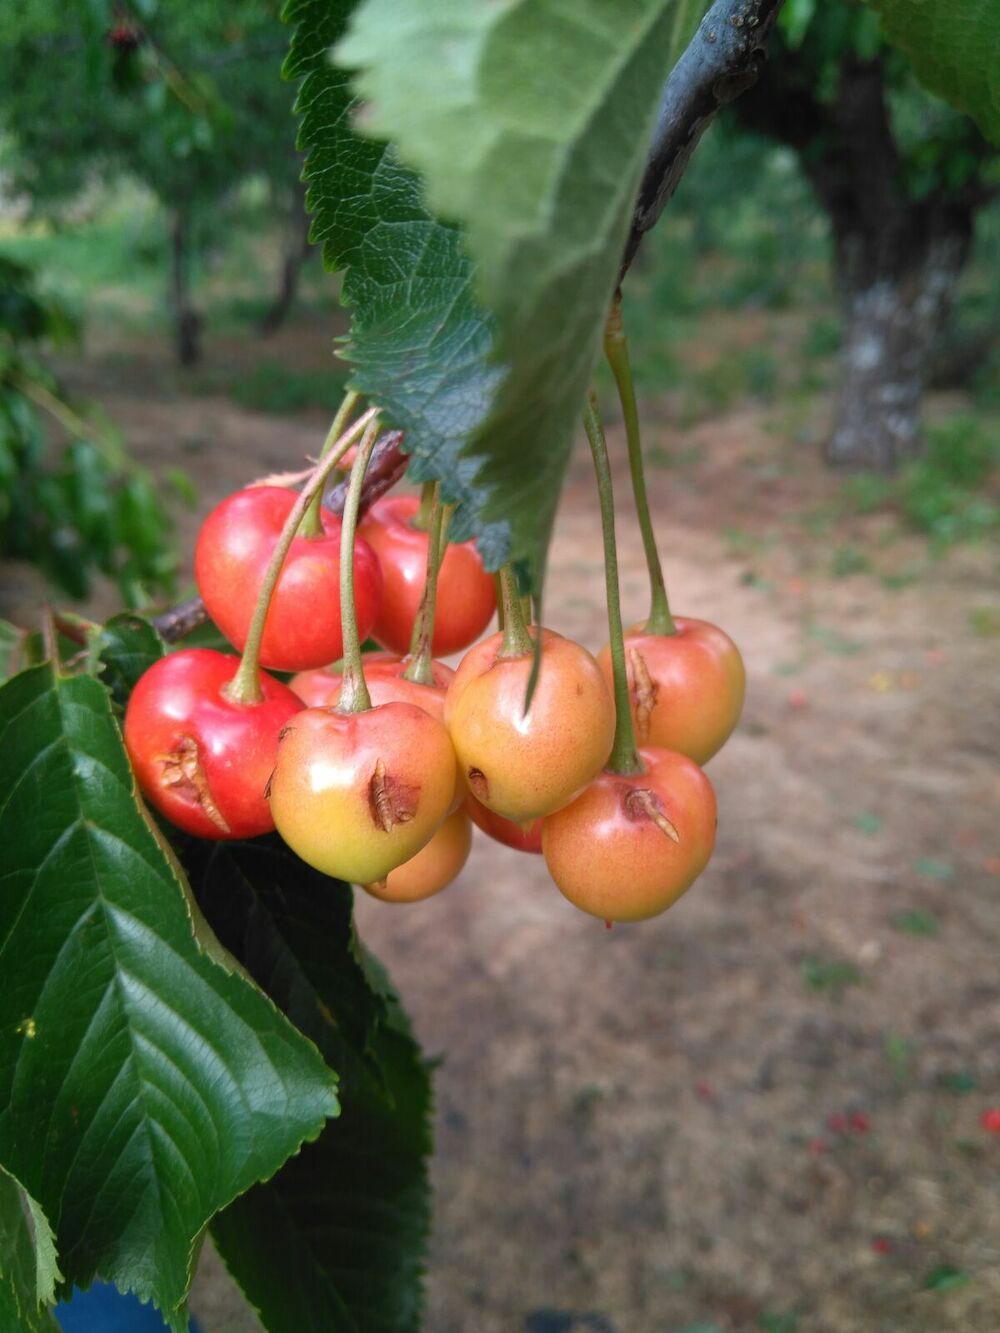 Cooperativas Extremadura insta a la Junta a actuar para incrementar la contratación del seguro de cereza